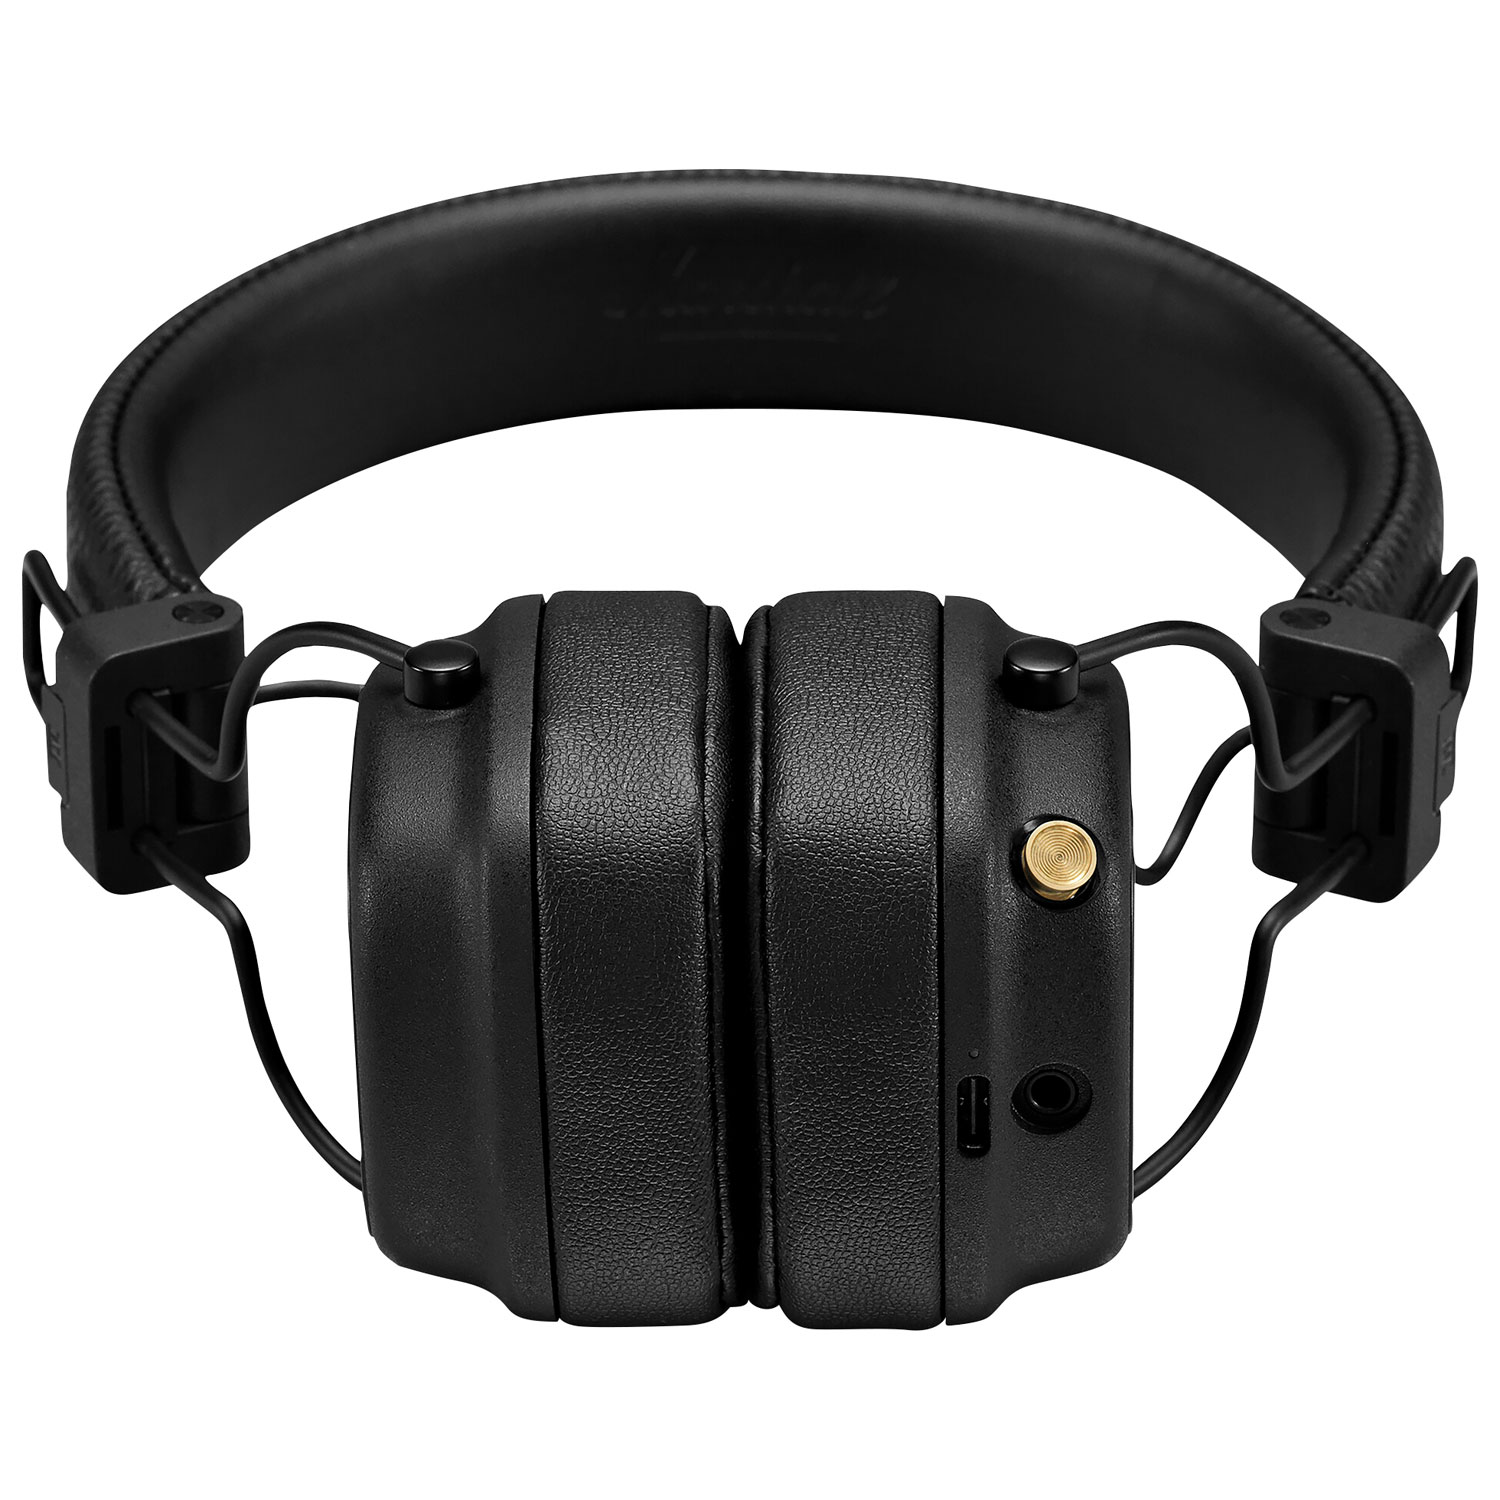 Marshall Major IV On-Ear Bluetooth Headphones - Black | Best Buy 